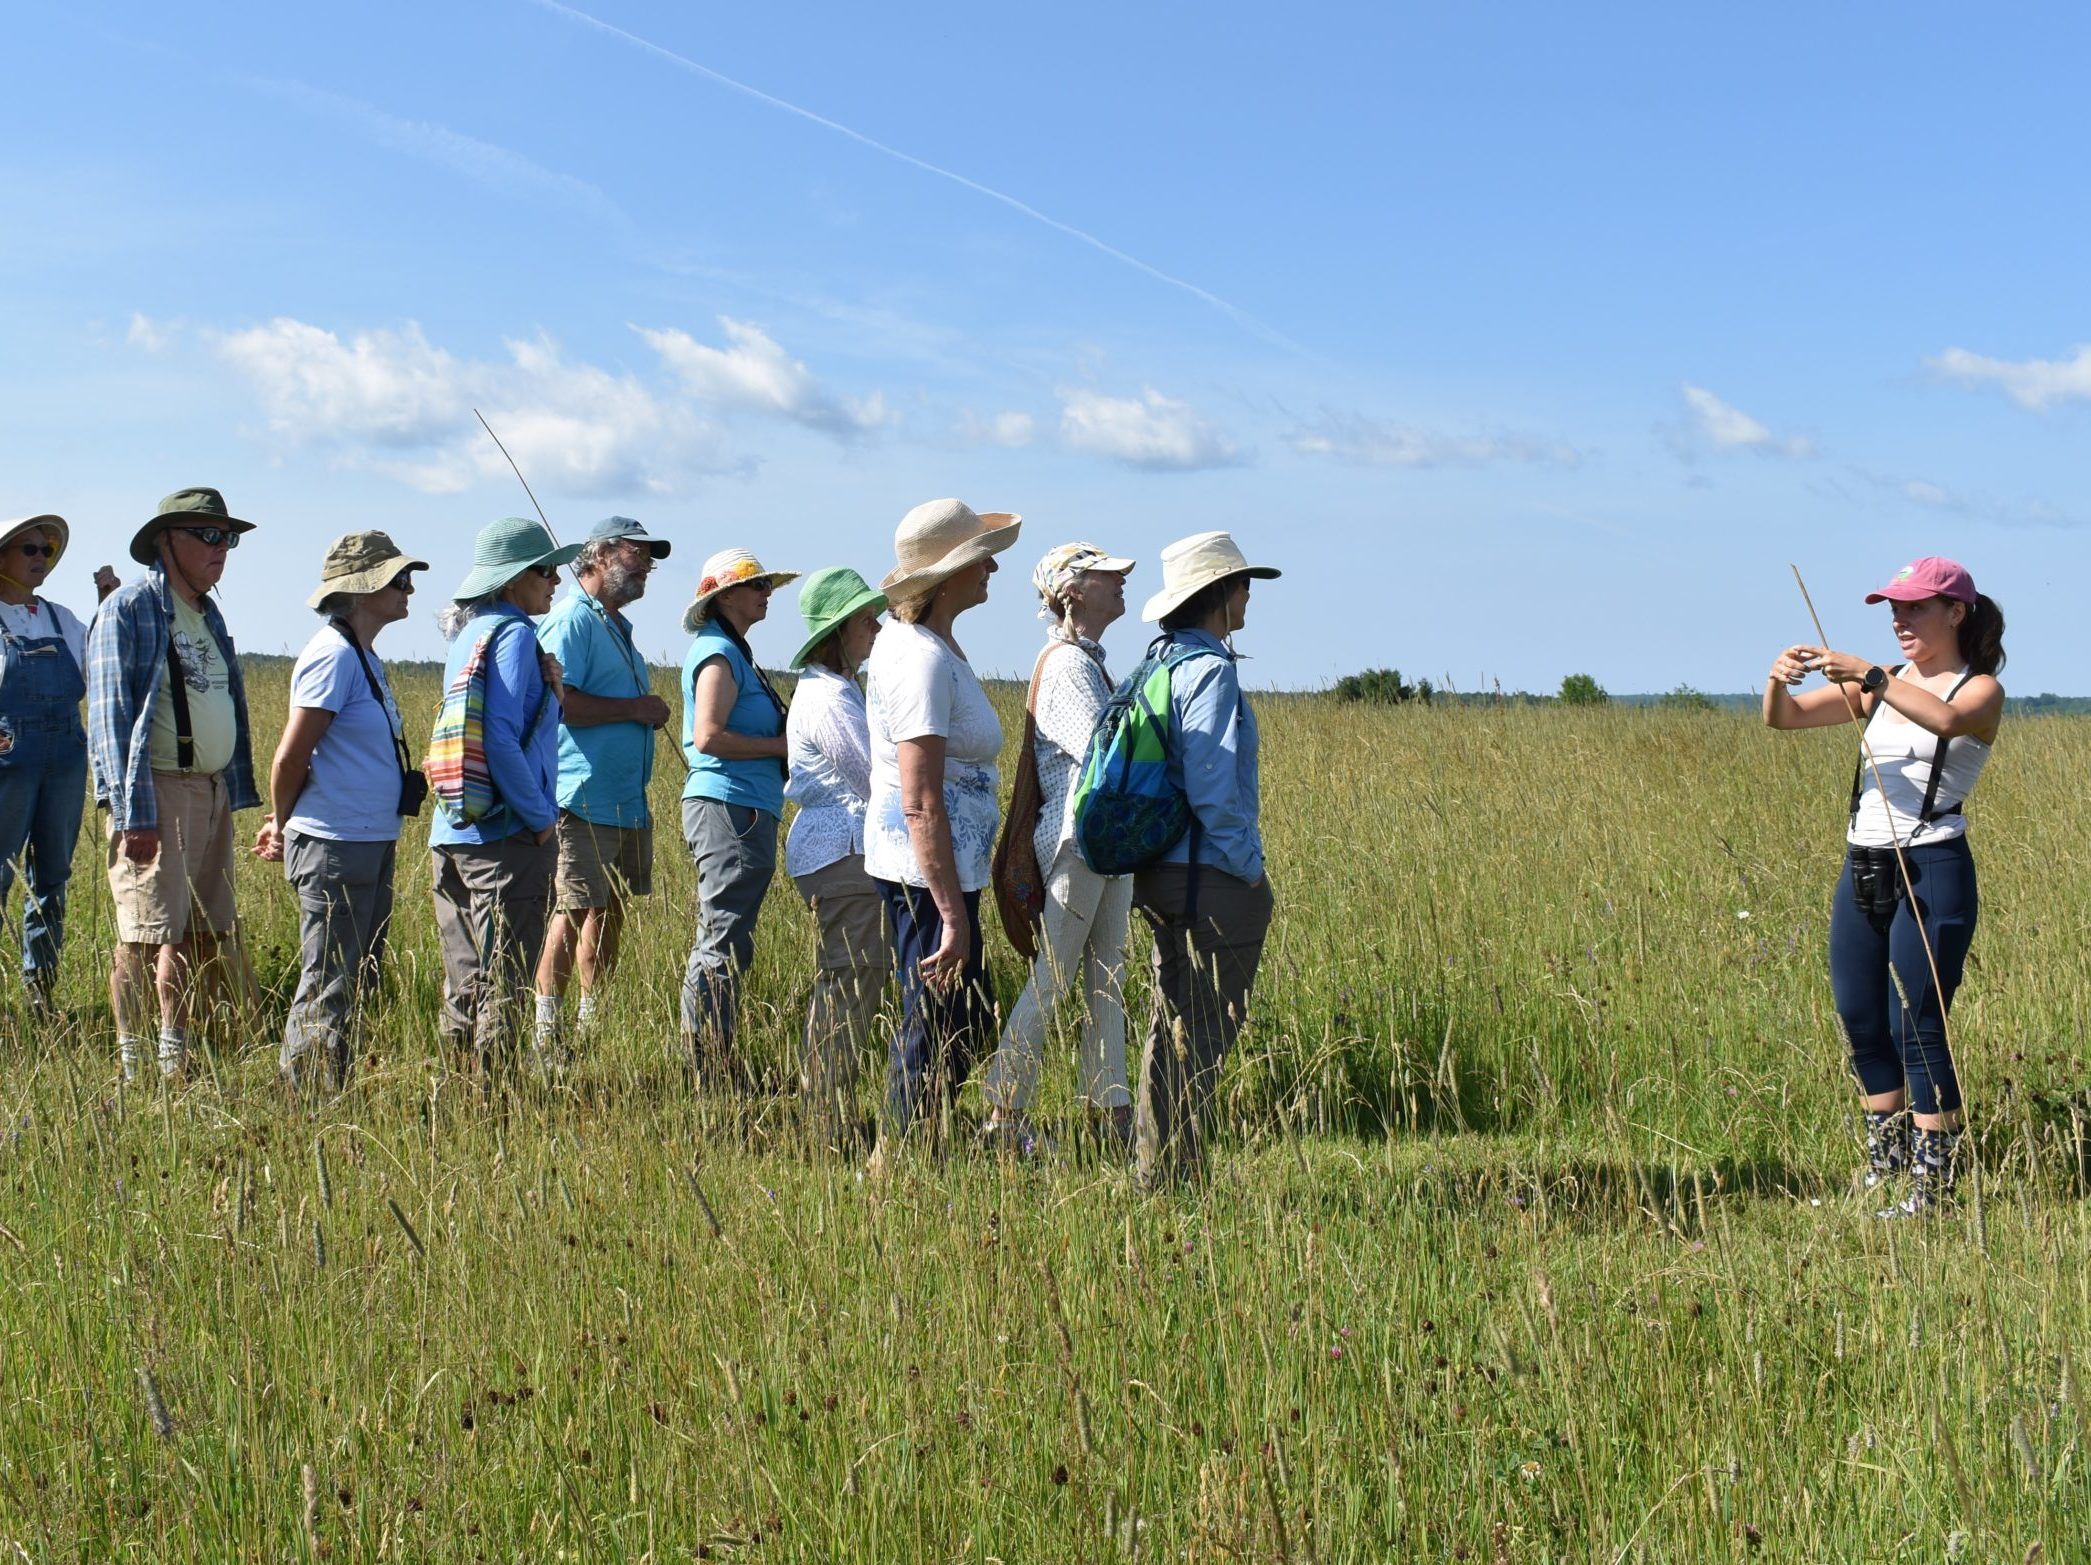 Grassland Workshop attendees in field in Maine